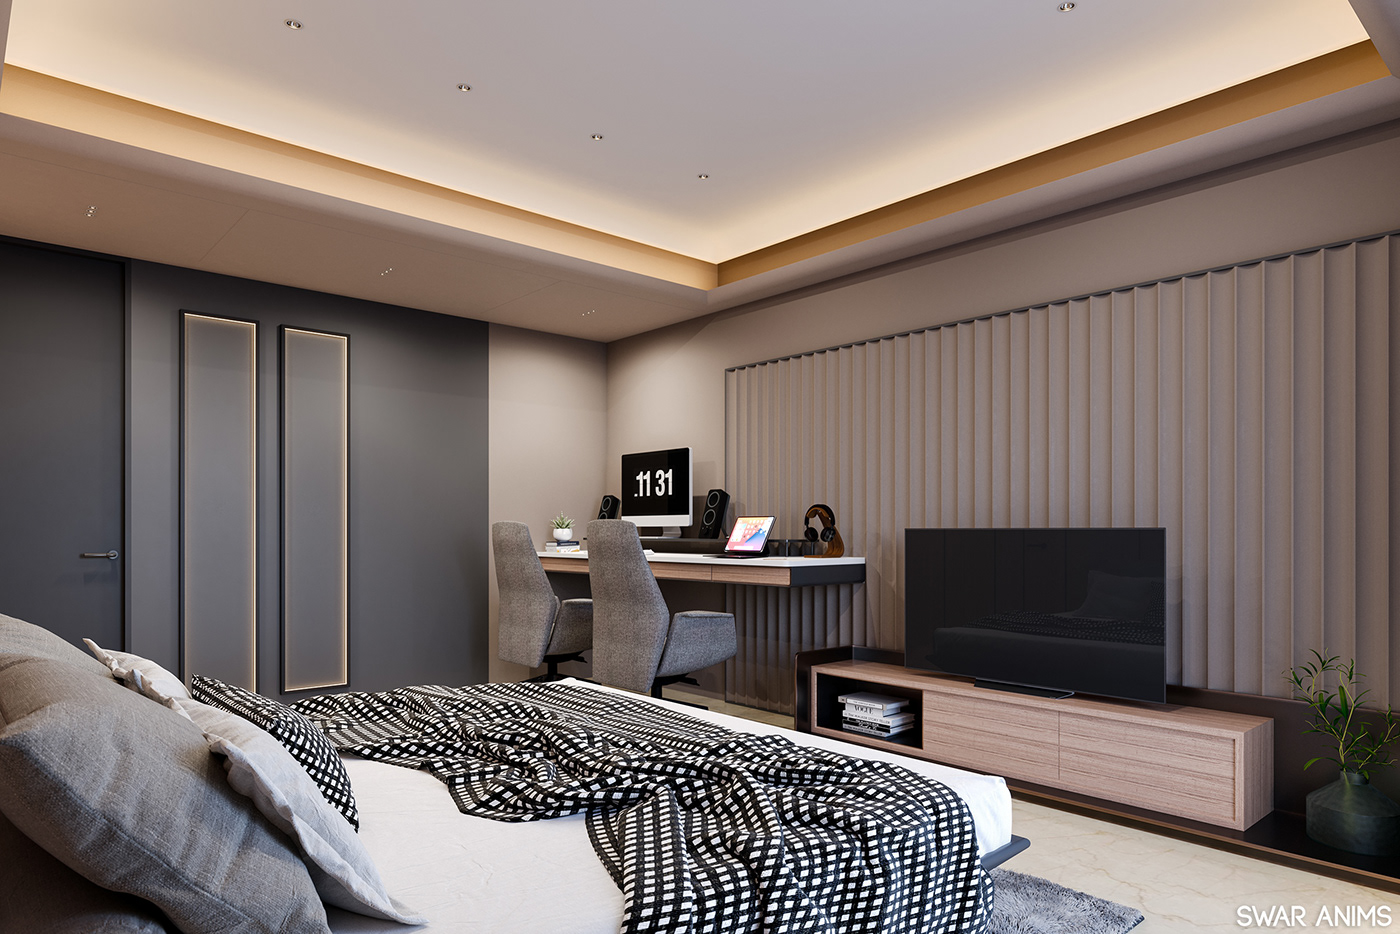 3D corona render  interior design  luxury modern Render viz architecture archviz CGI